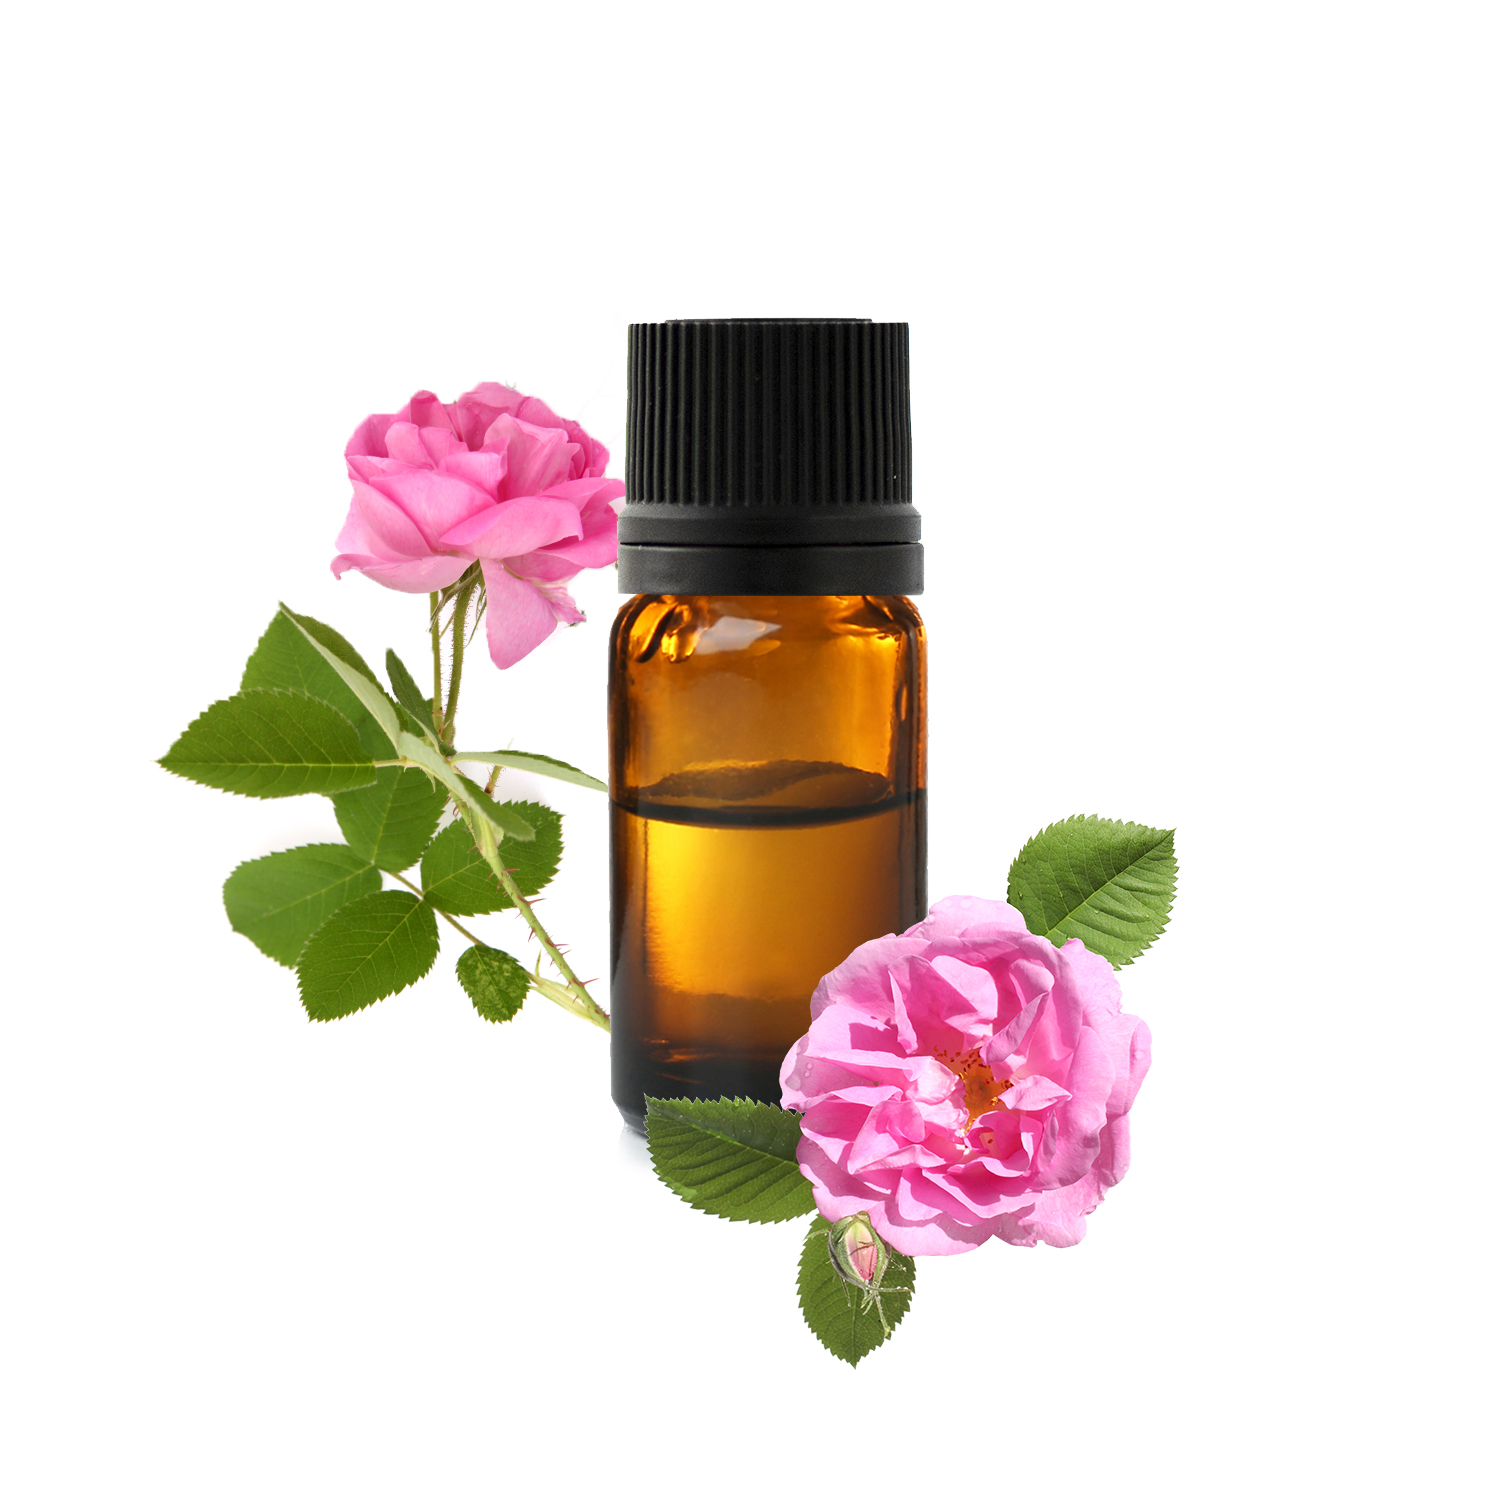 Les bienfaits de l'huile essentielle de géranium rosat - Marie Claire